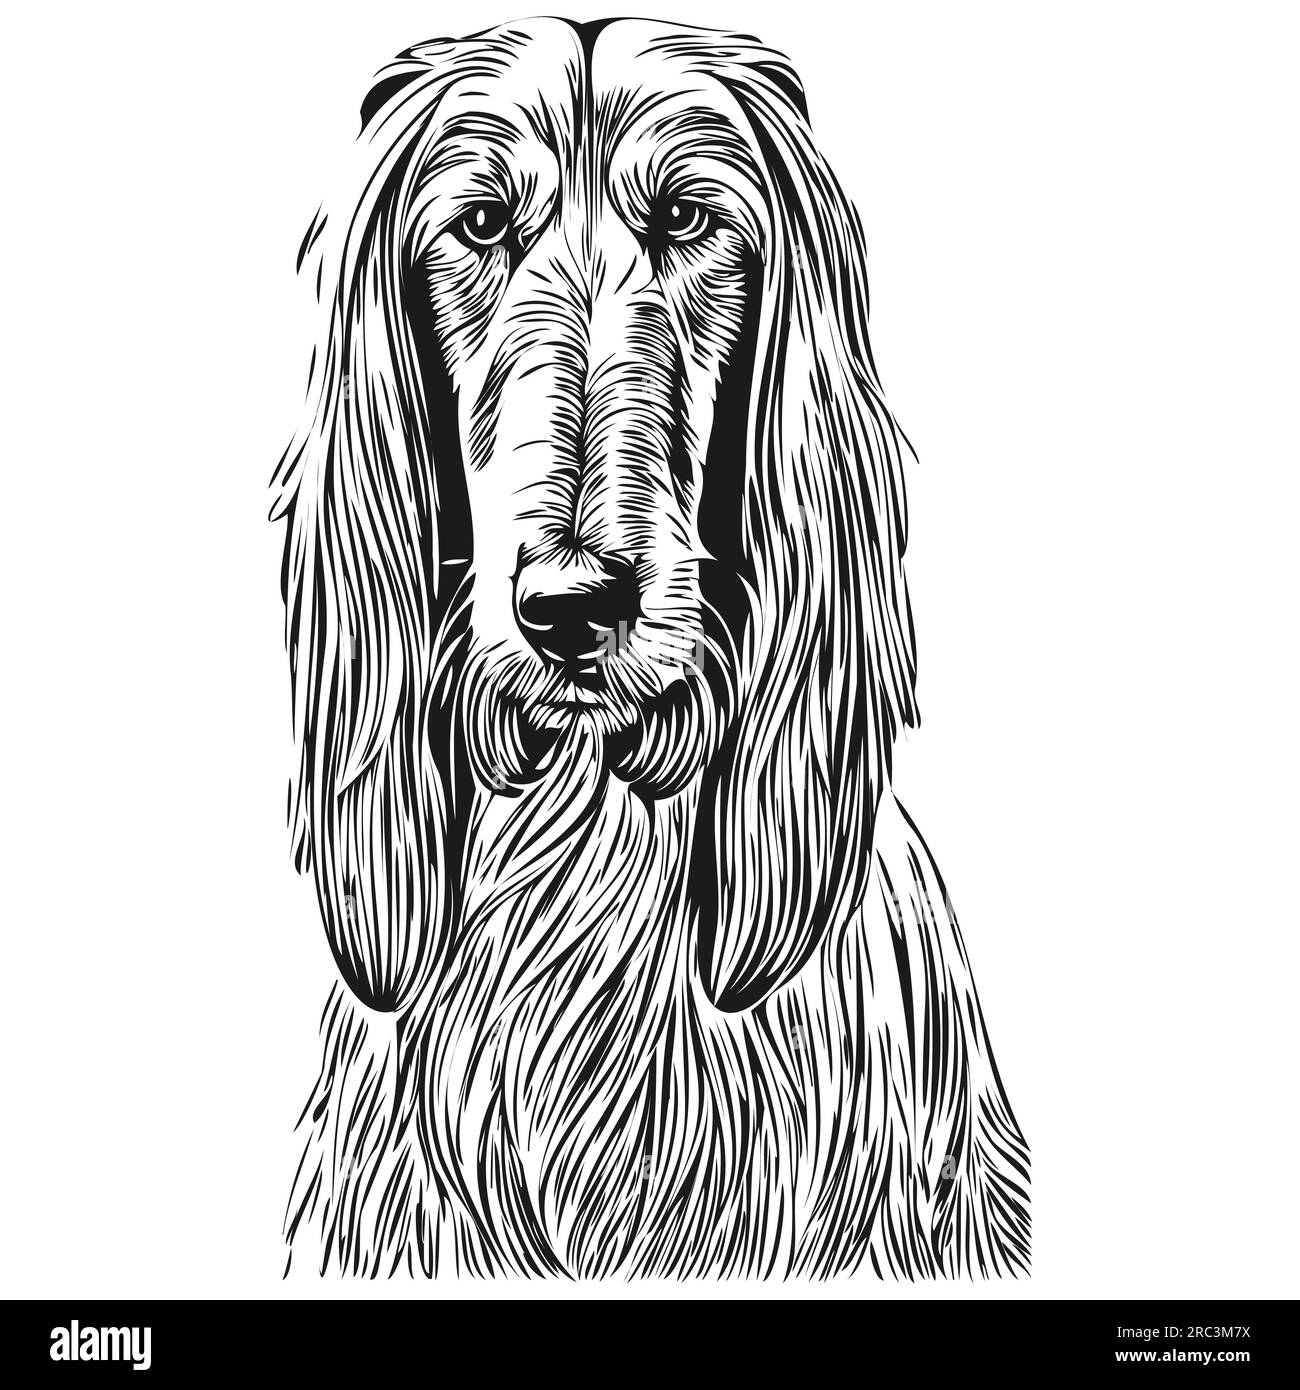 Chien chien chien de chien chien chien de chien dessiné à la main dessin noir et blanc dessin dessin dessin dessin dessin dessin au trait Illustration de Vecteur